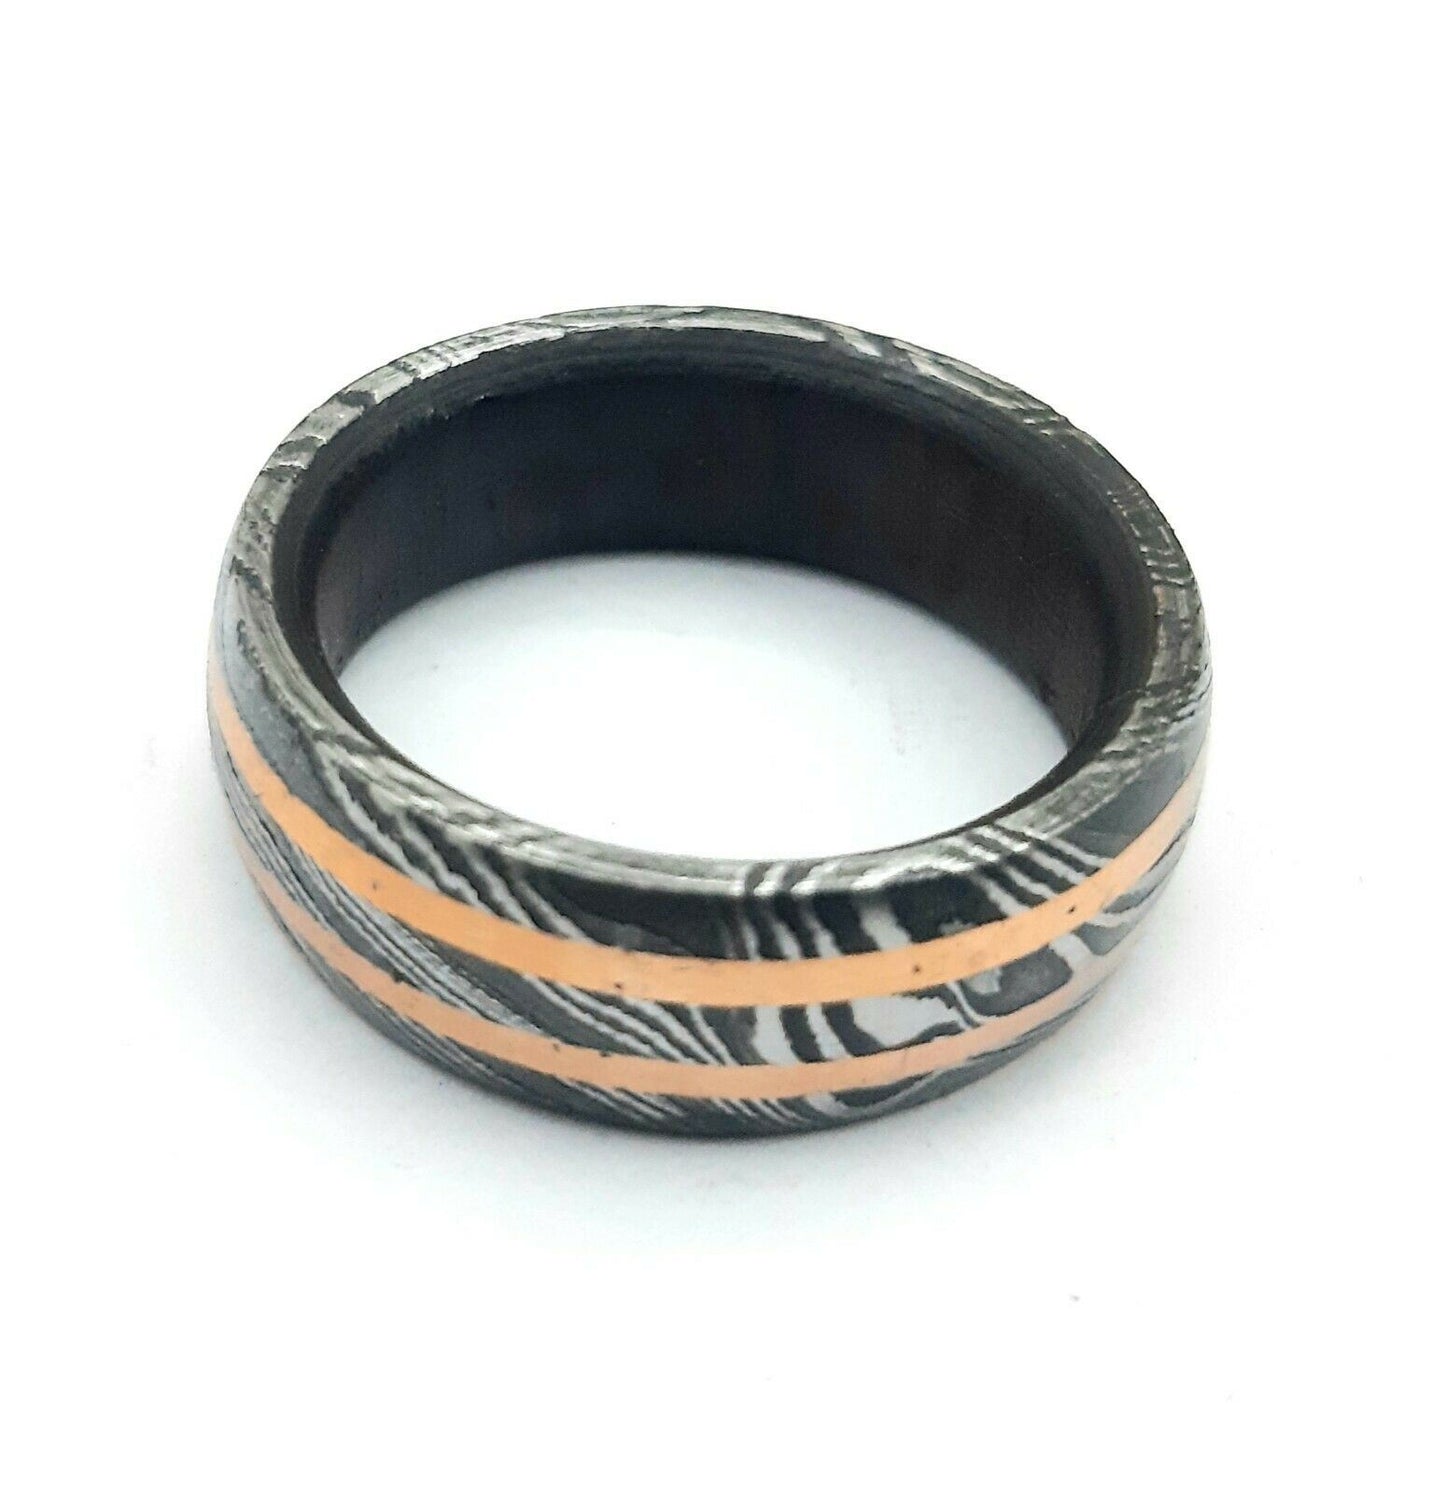 Handmade Damascus Steel Wedding Band Ring For Men-Engagement Band Ring for Men